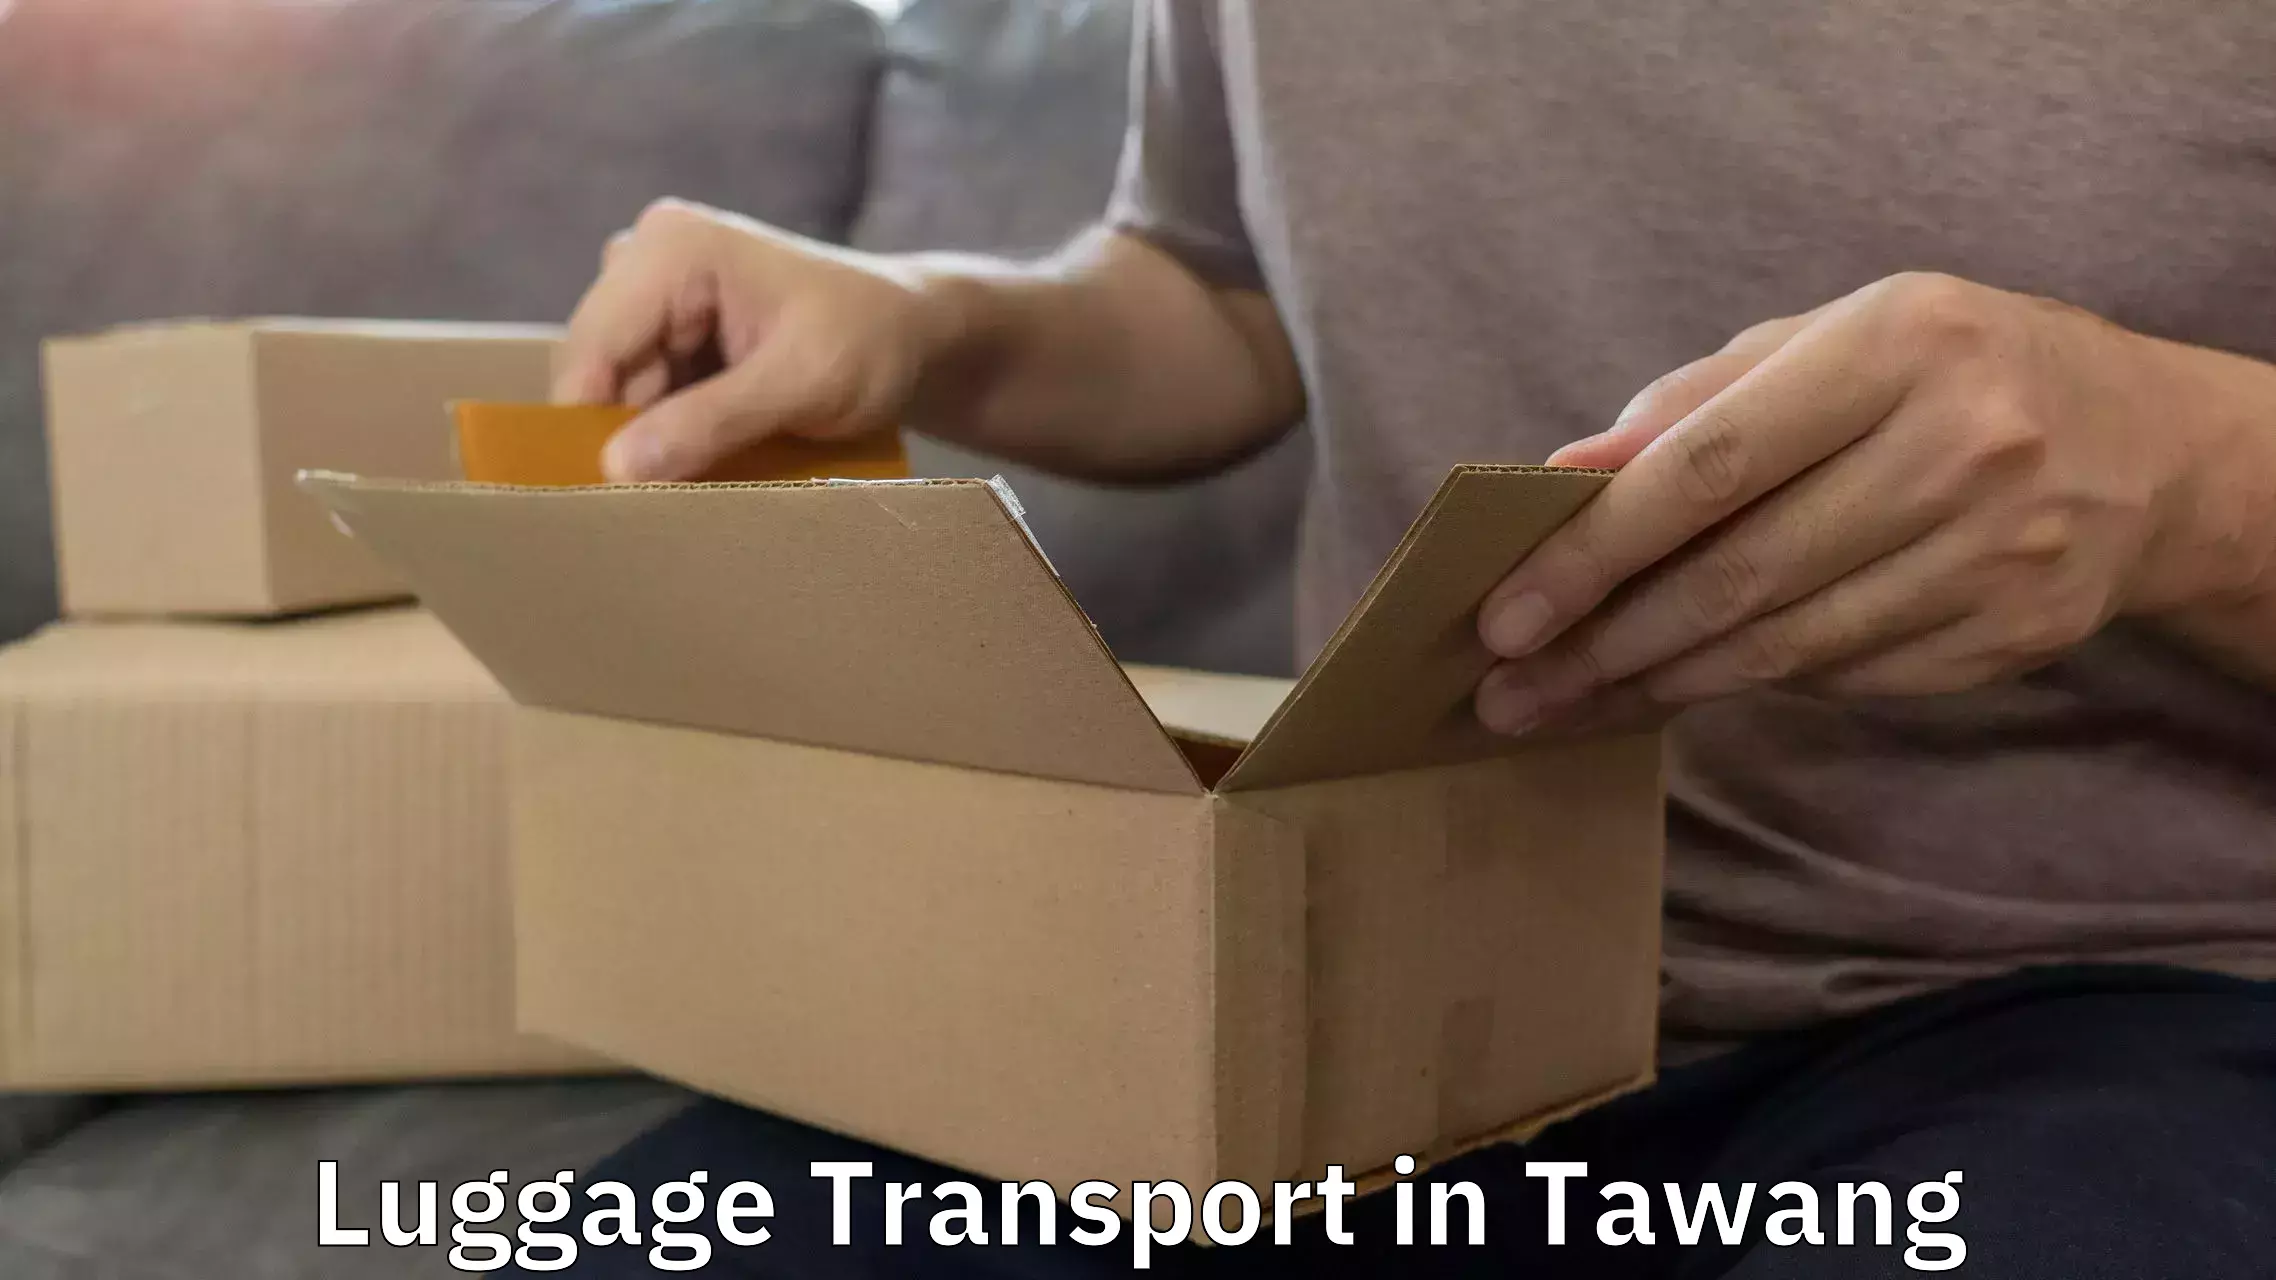 Efficient baggage transport in Tawang